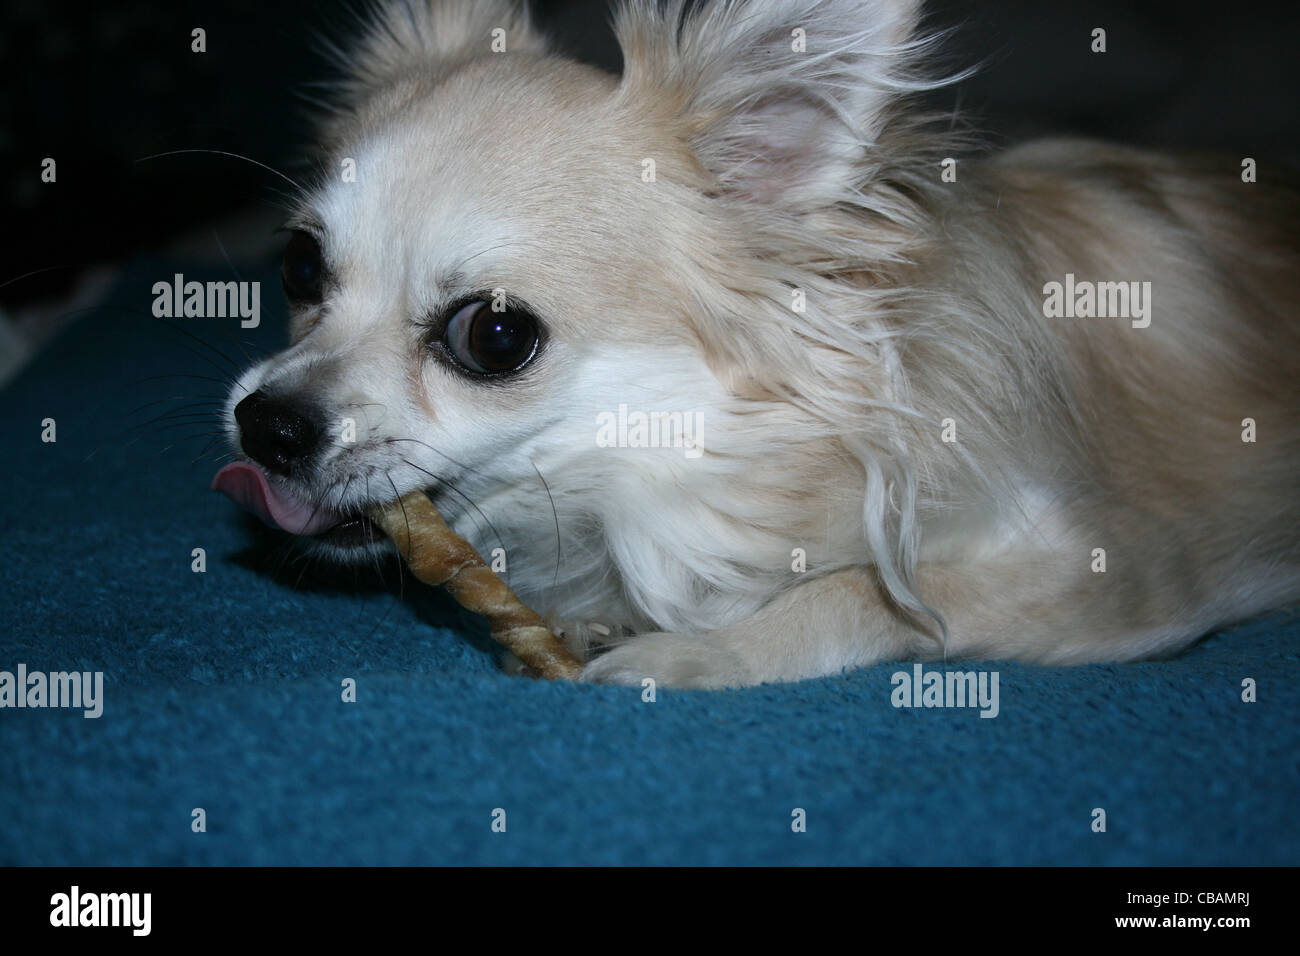 Langhaar Chihuahua oder mexikanische Hund mit zäh-Aktie auf blaue Decke Stockfoto